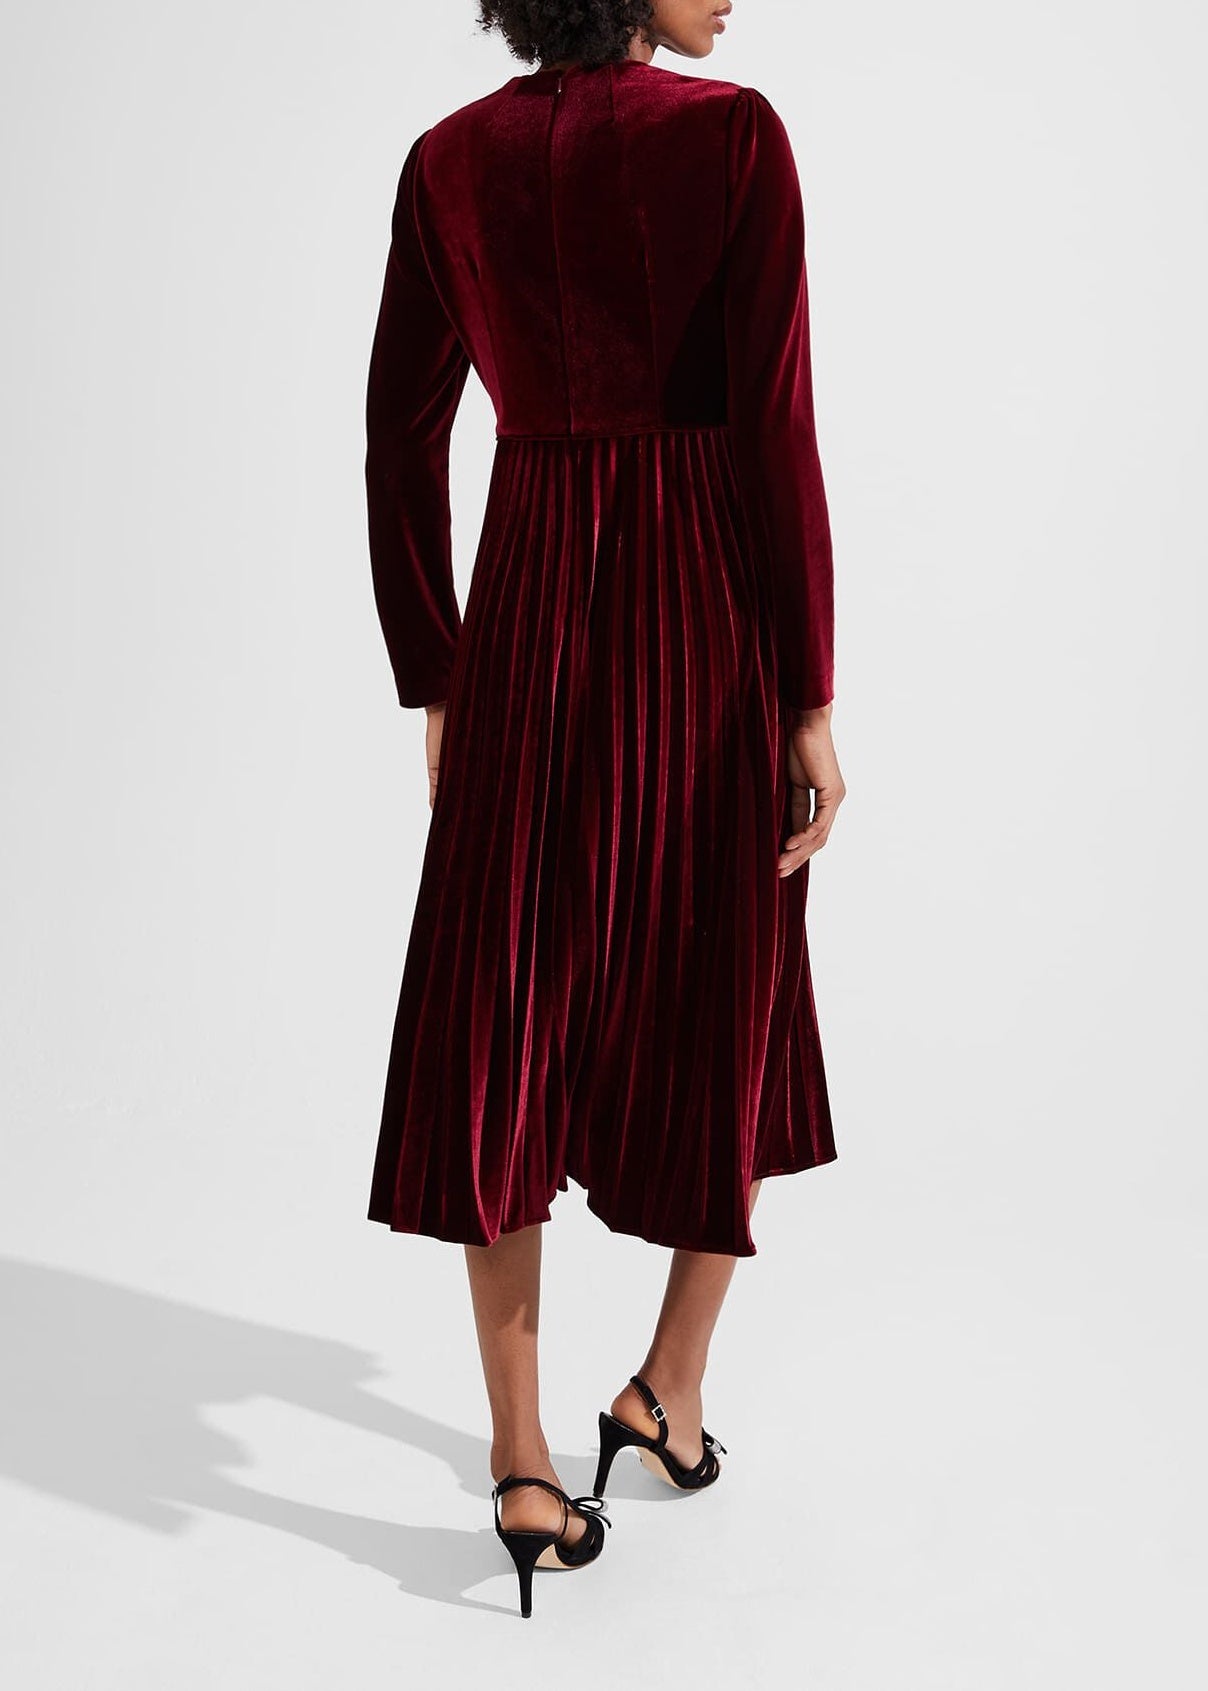 Rosalie Velvet Dress 0223/5196/9045l00 Deep-Red